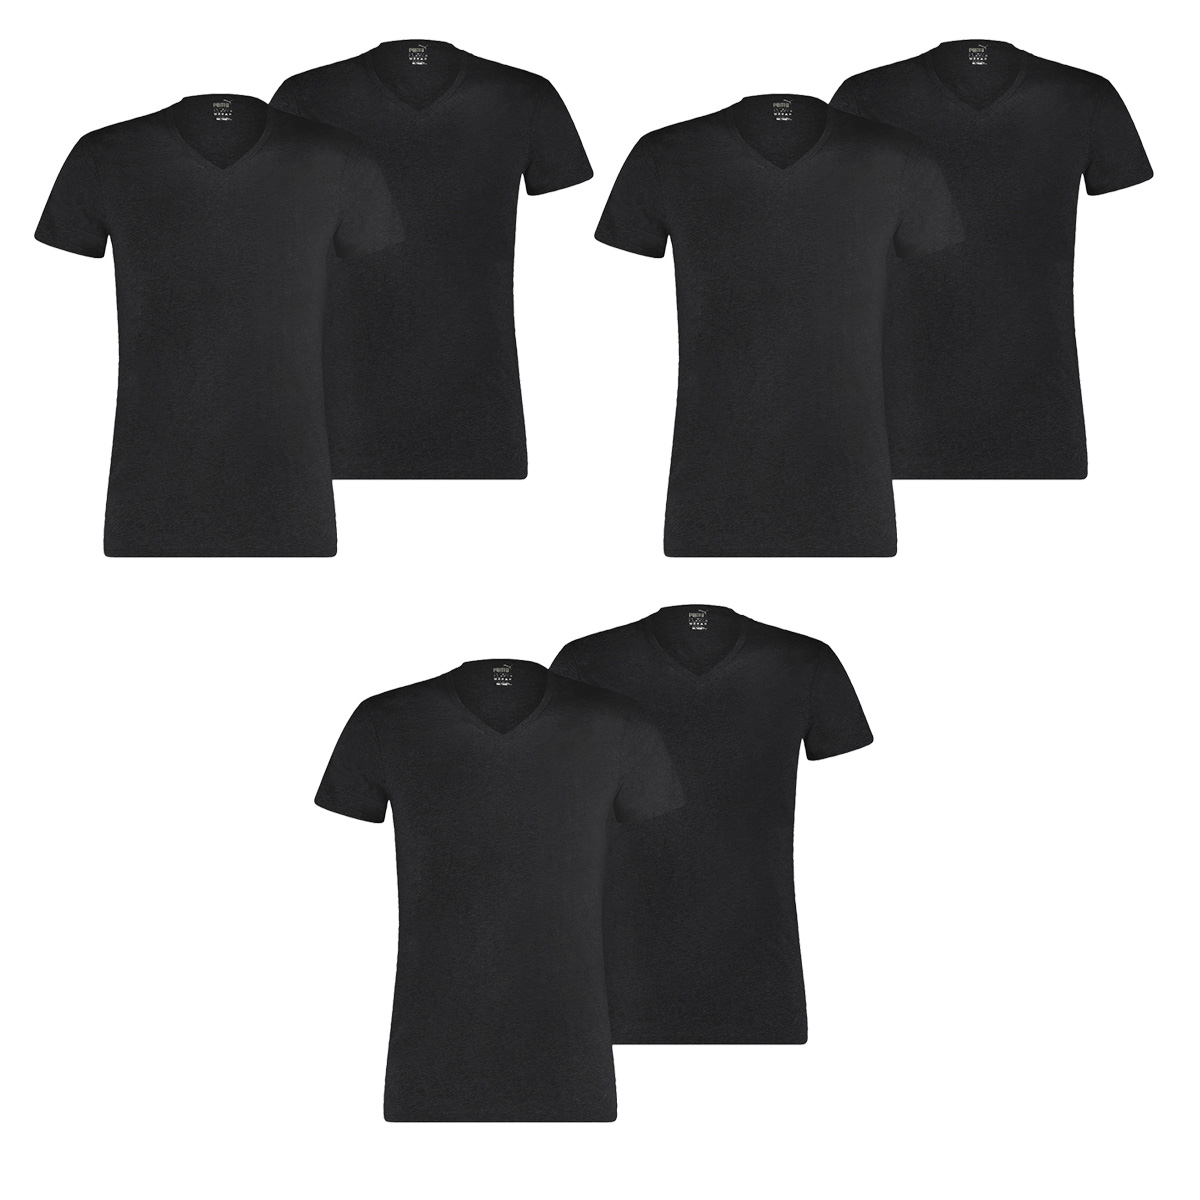 6 er Pack Puma Basic V Neck T-Shirt Men Herren Unterhemd V-Ausschnitt